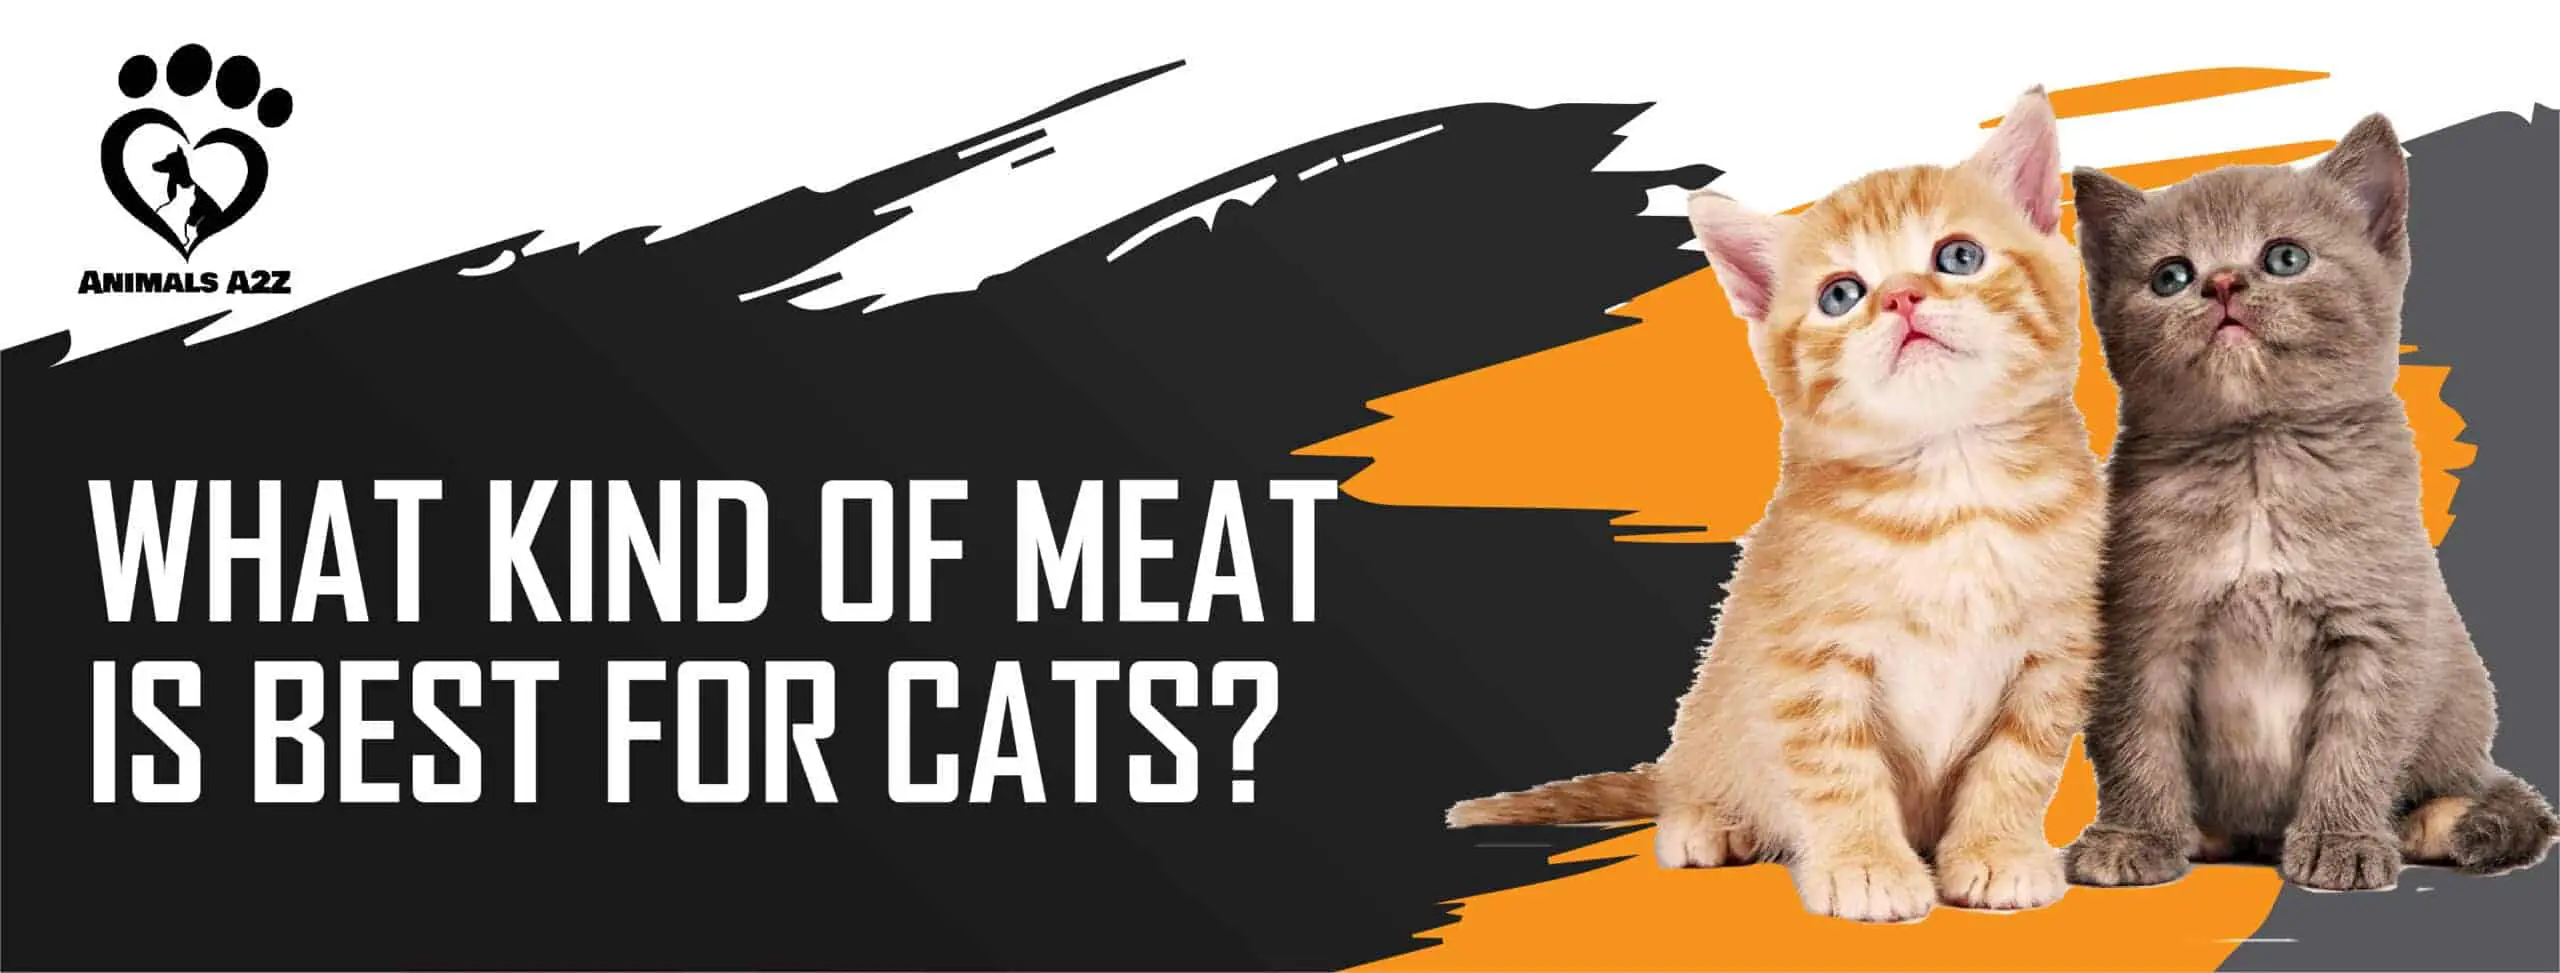 ¿Qué tipo de carne es mejor para los gatos?